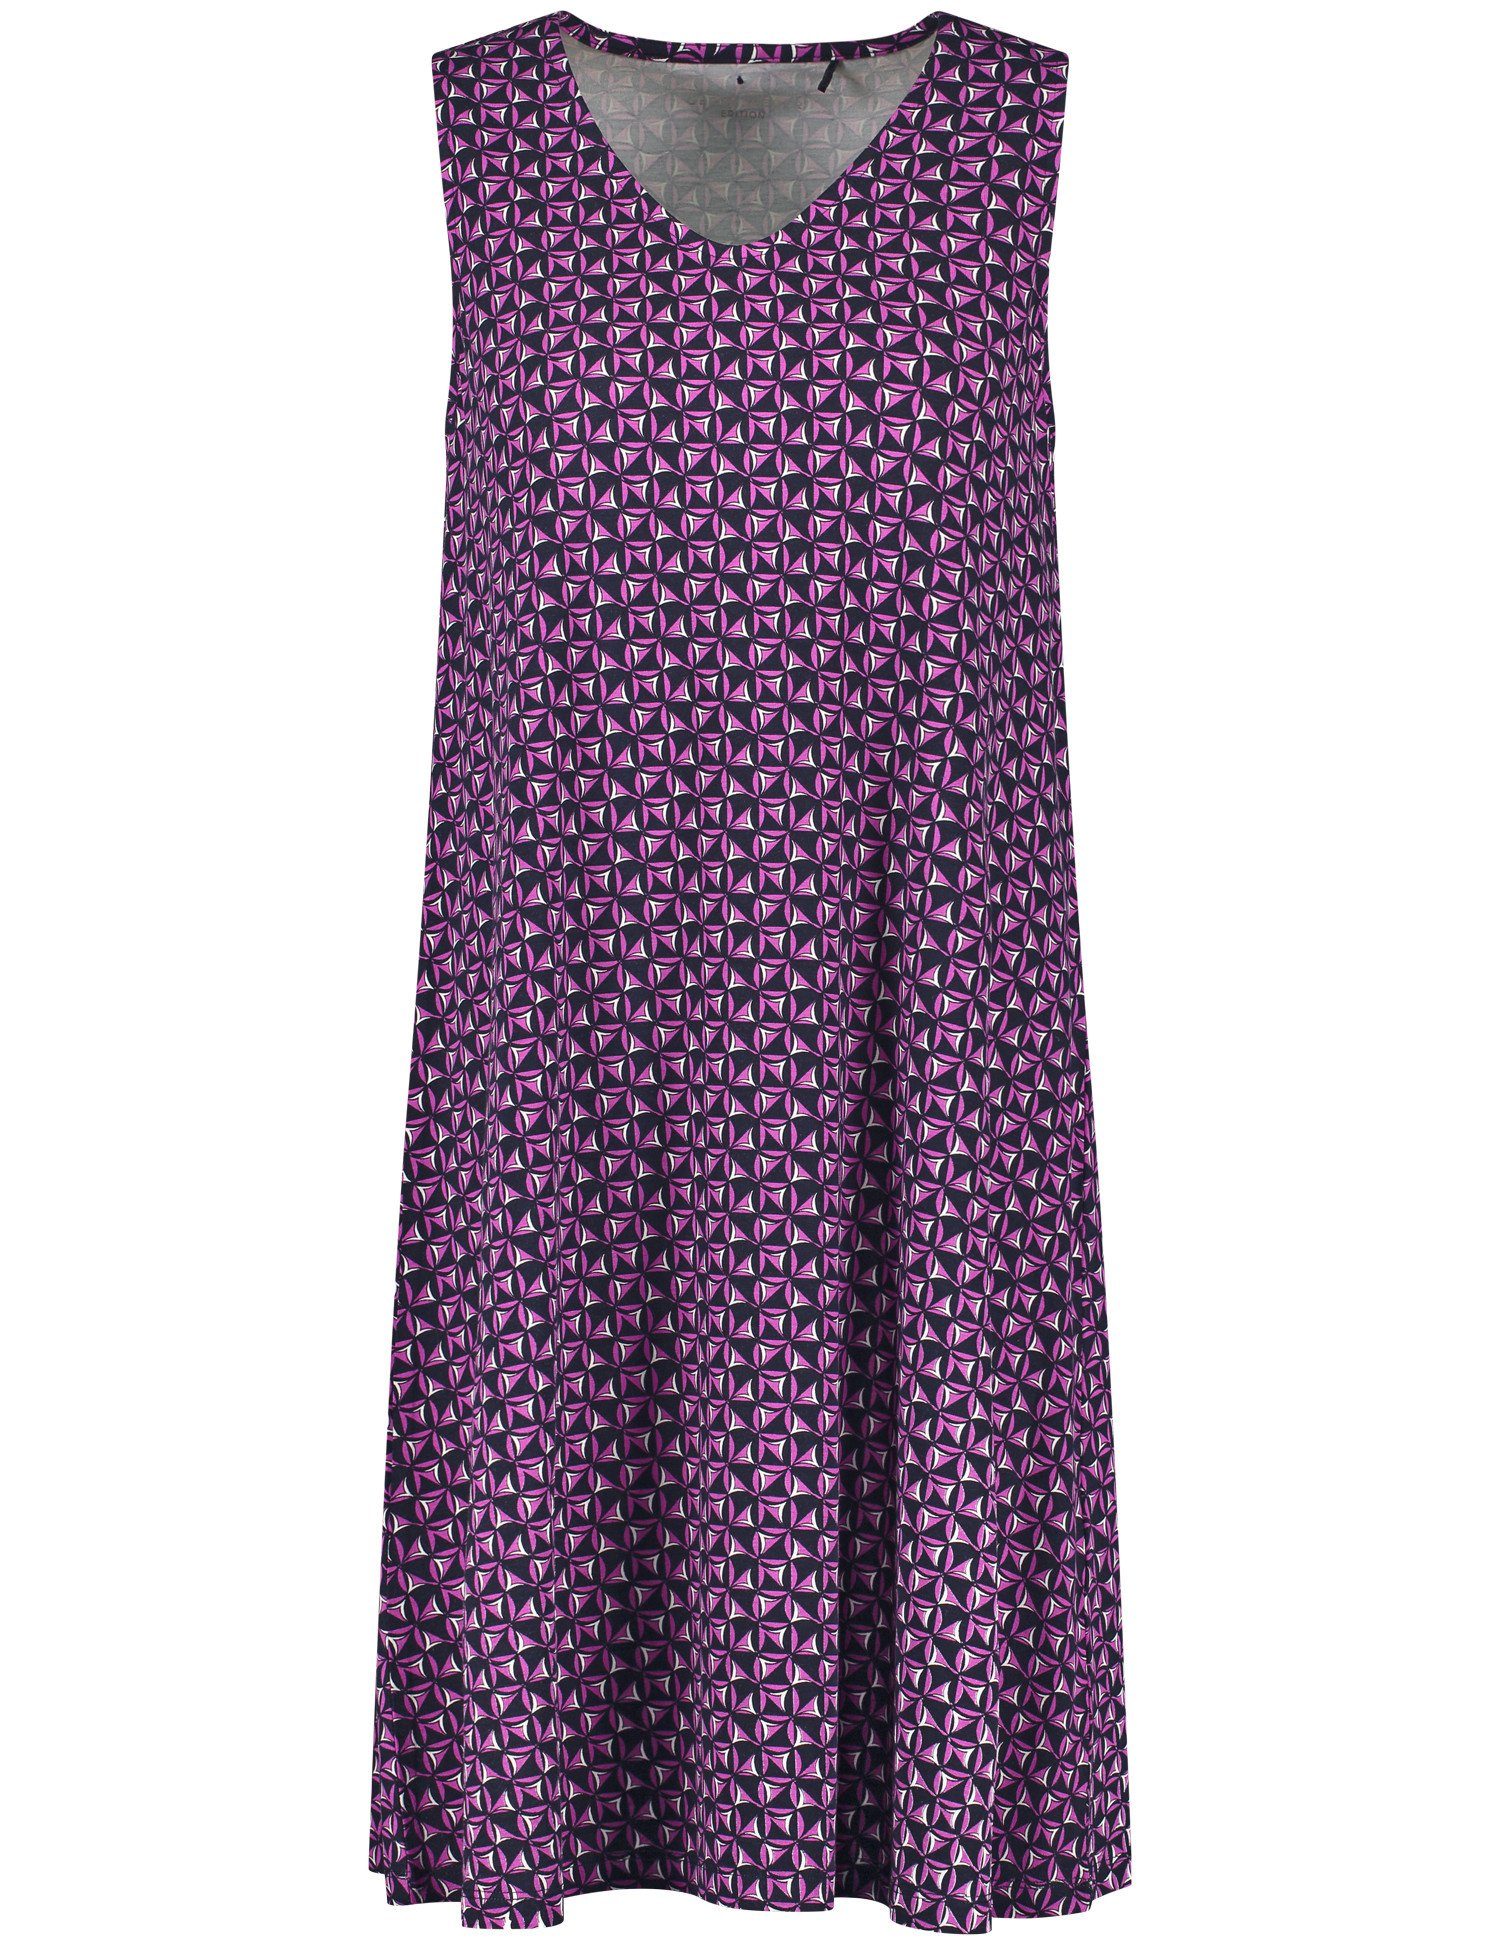 GERRY WEBER Midikleid Leicht ausgestelltes Druck Blau/Lila/Pink Jerseykleid